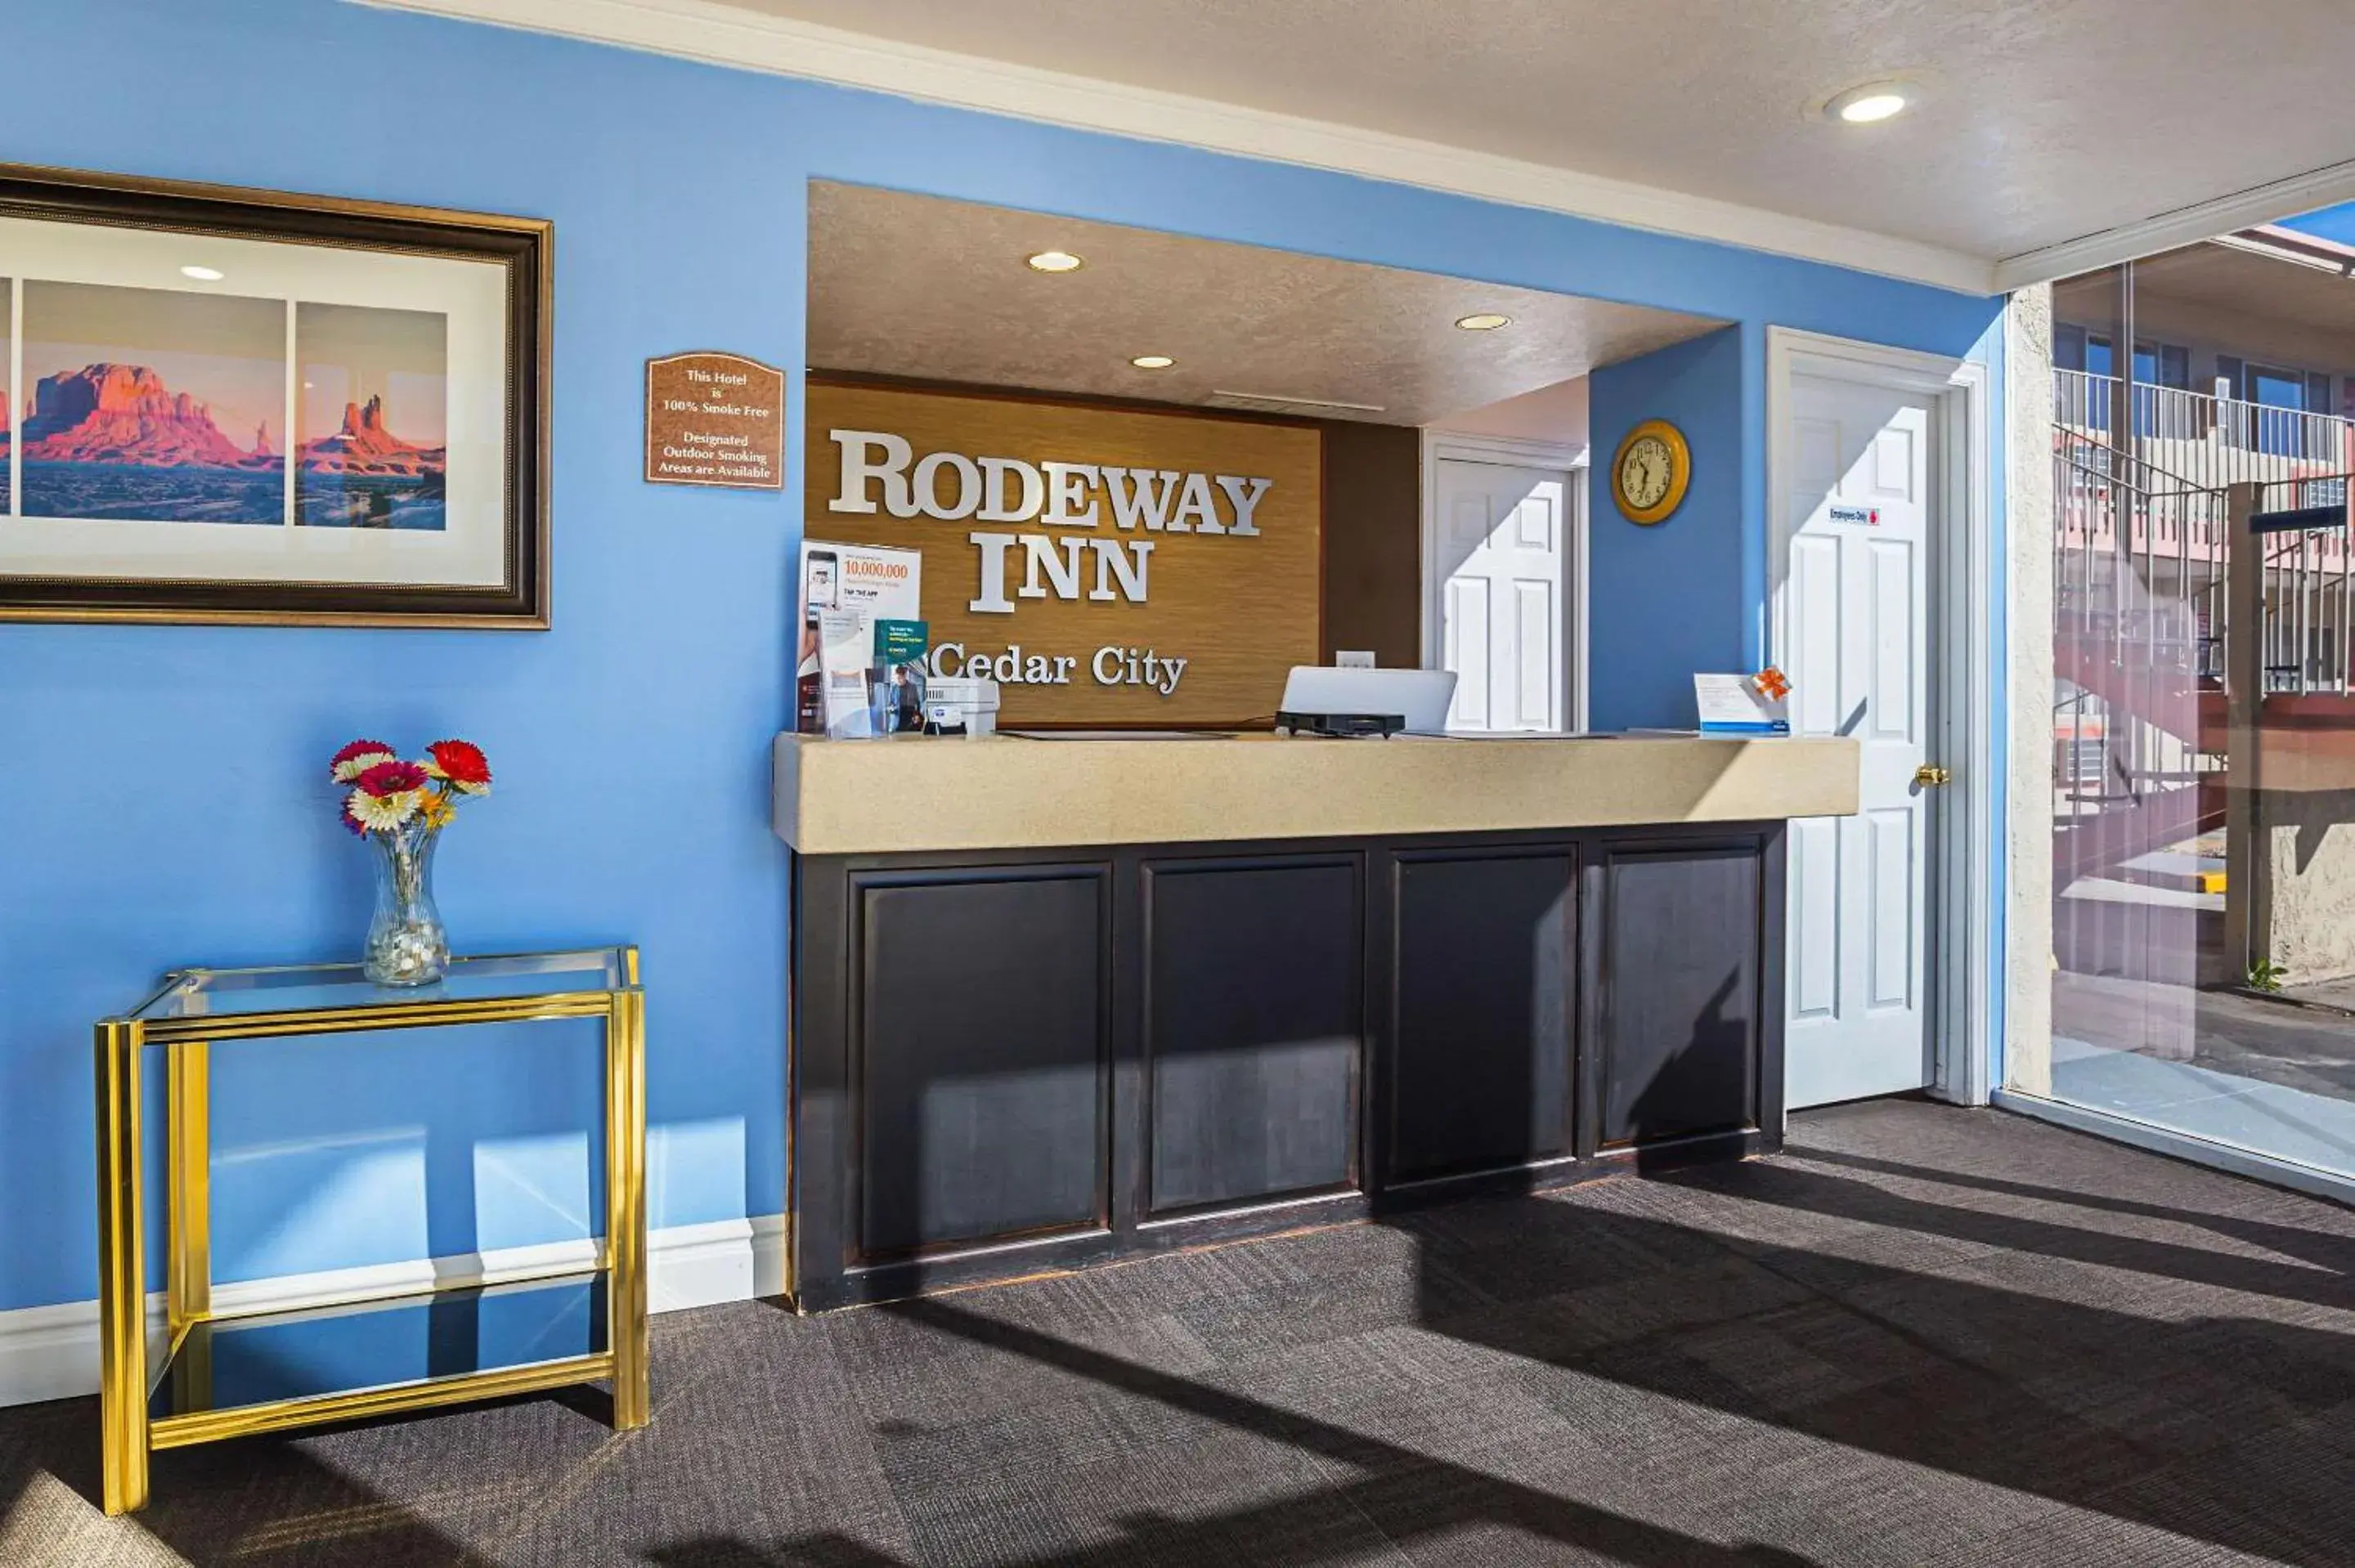 Lobby or reception, Lobby/Reception in Rodeway Inn Cedar City